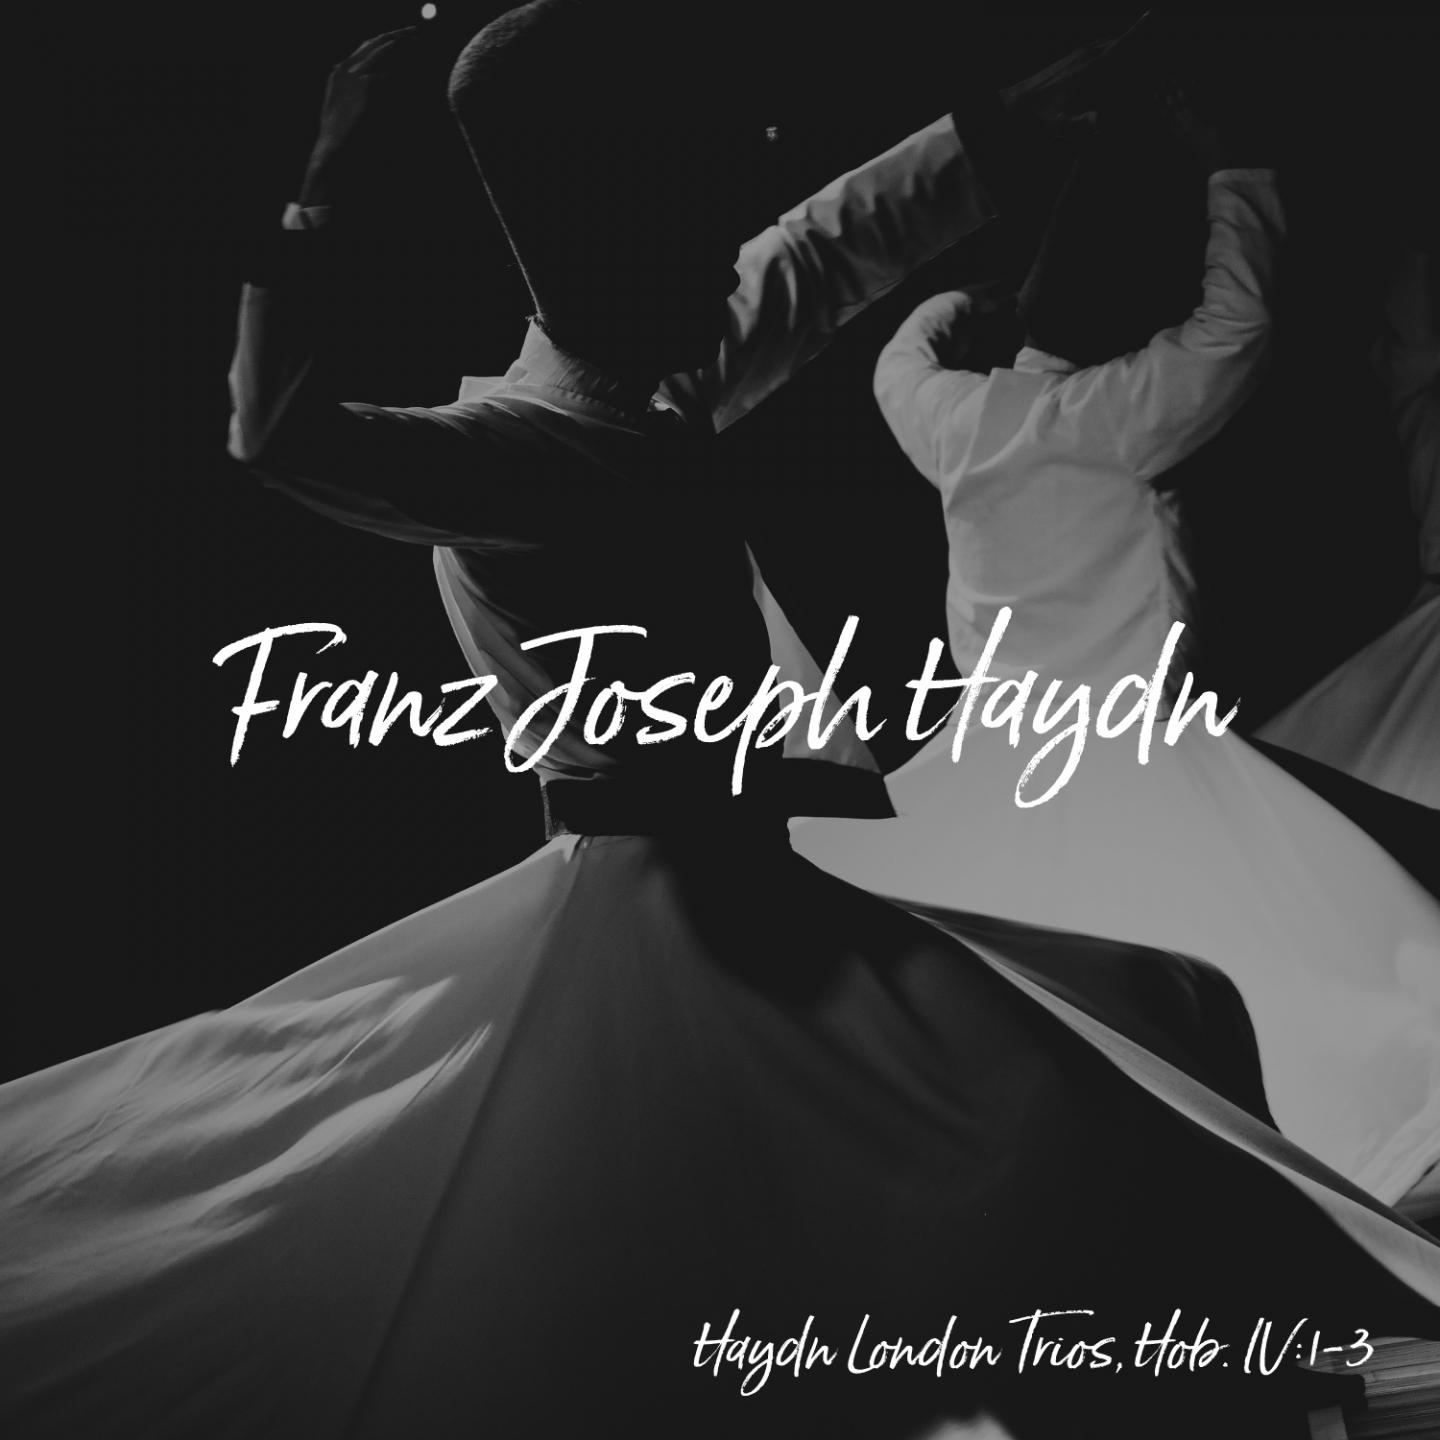 Haydn London Trios, Hob. IV:1-3